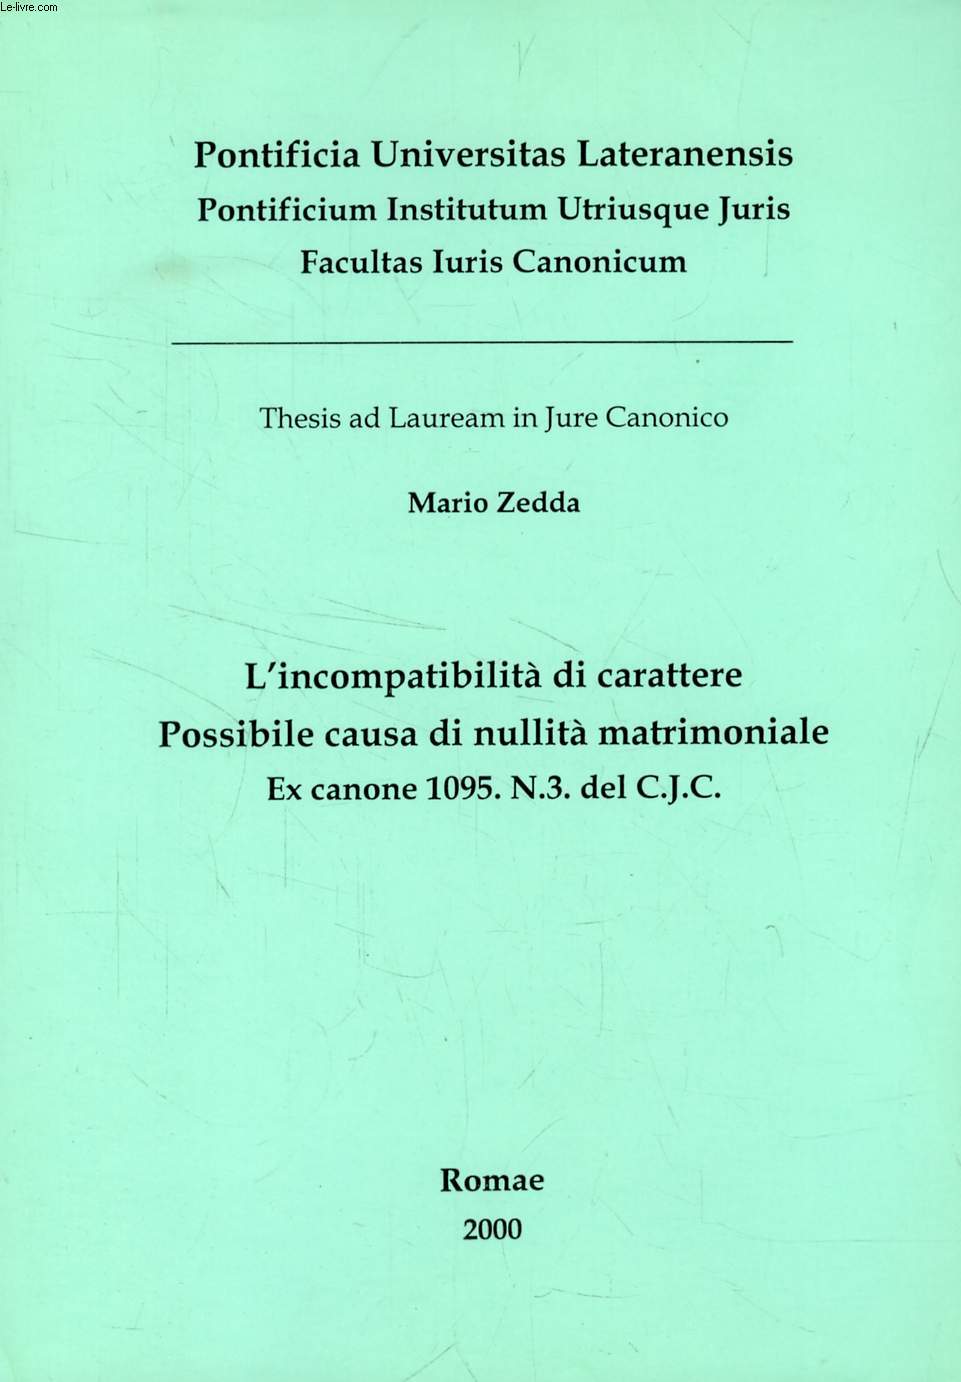 L'INCOMPATIBILTA' DI CARATTERE, POSSIBILE CAUSA DI NULLITA' MATRIMONIALE, EX CANONE 1095. N.3. DEL C.J.C. (THESIS)